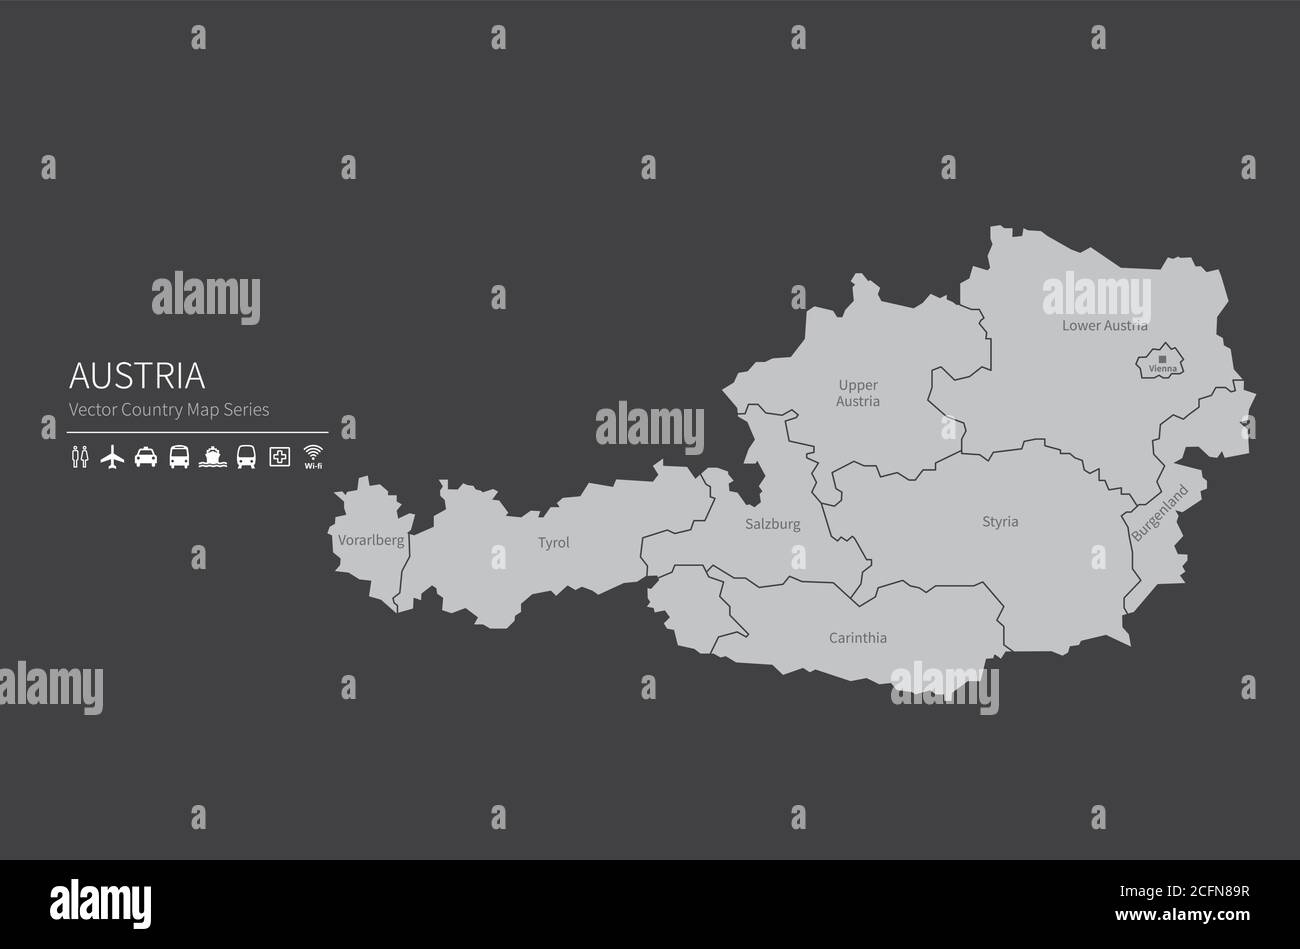 Österreich-Karte. Nationale Karte der Welt. Grau gefärbte Länder Kartenserie. Stock Vektor